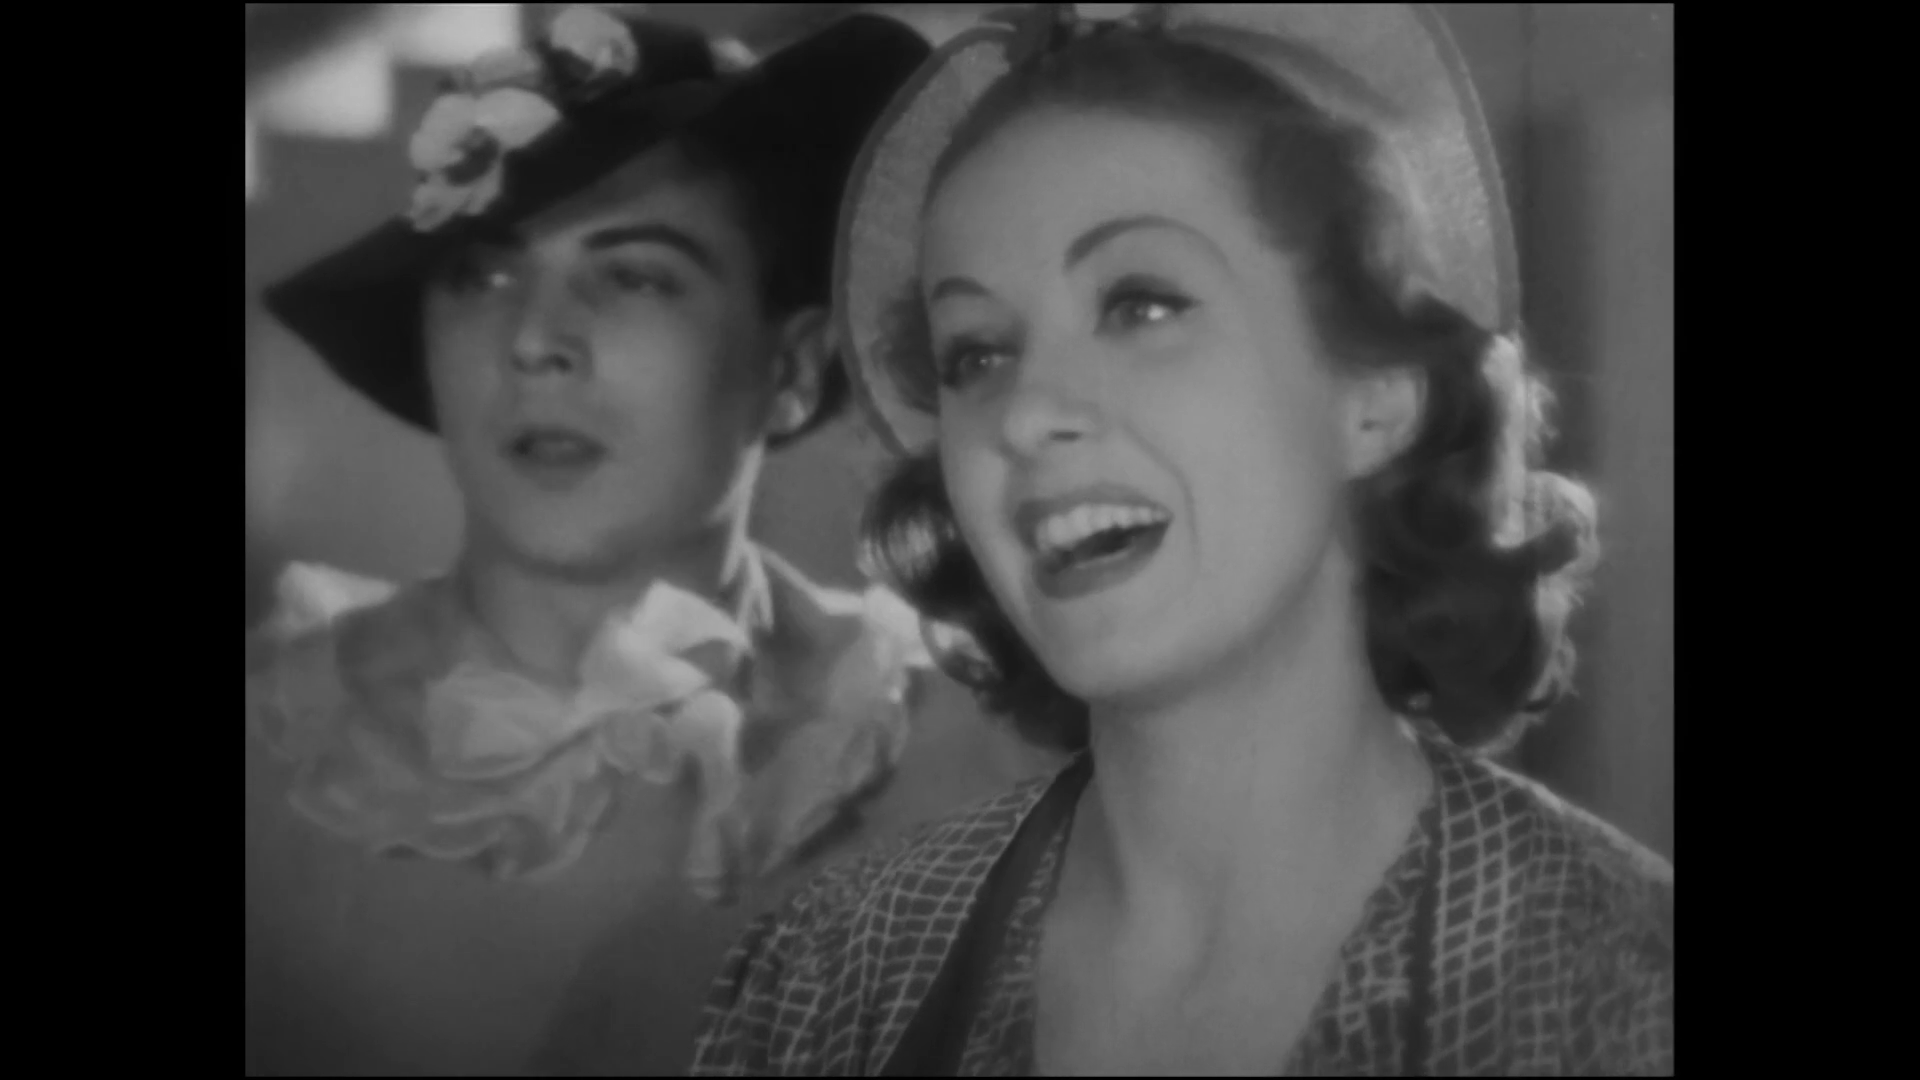 Raymond Galle et Danielle Darrieux dans la comédie dramatique Club de femmes (1936) de Jacques Deval